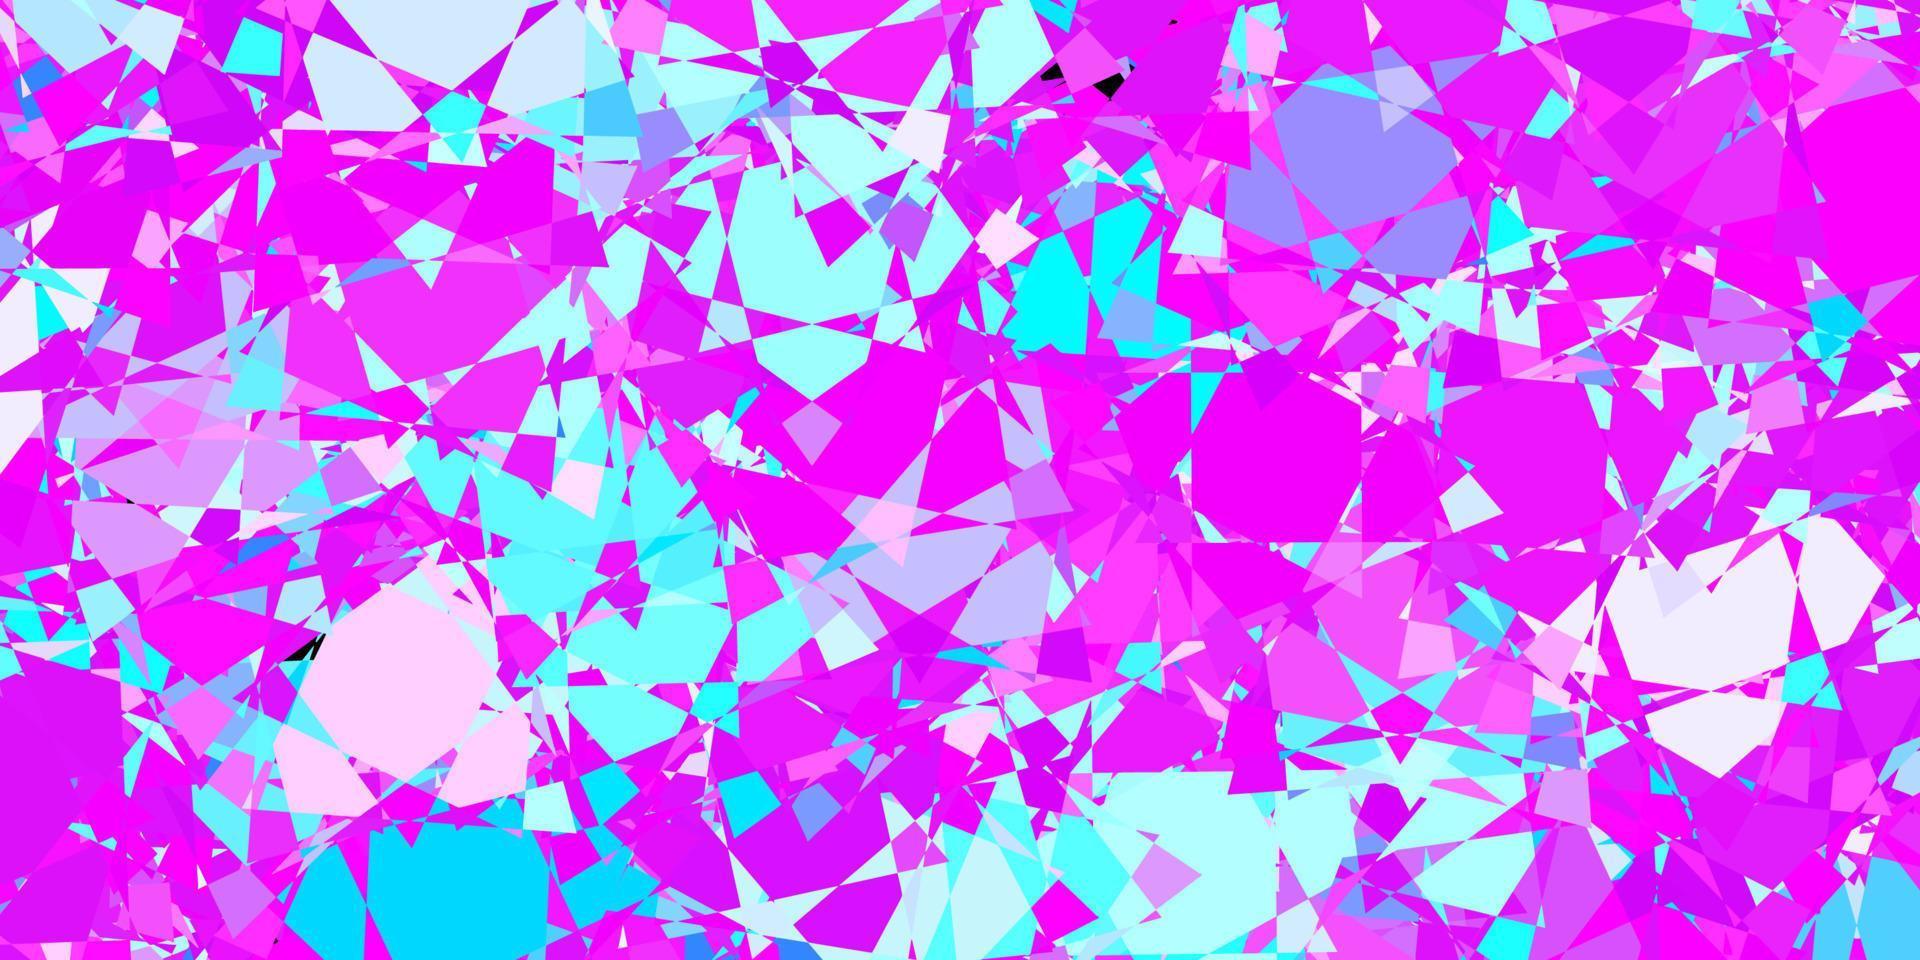 trama vettoriale rosa scuro, blu con triangoli casuali.